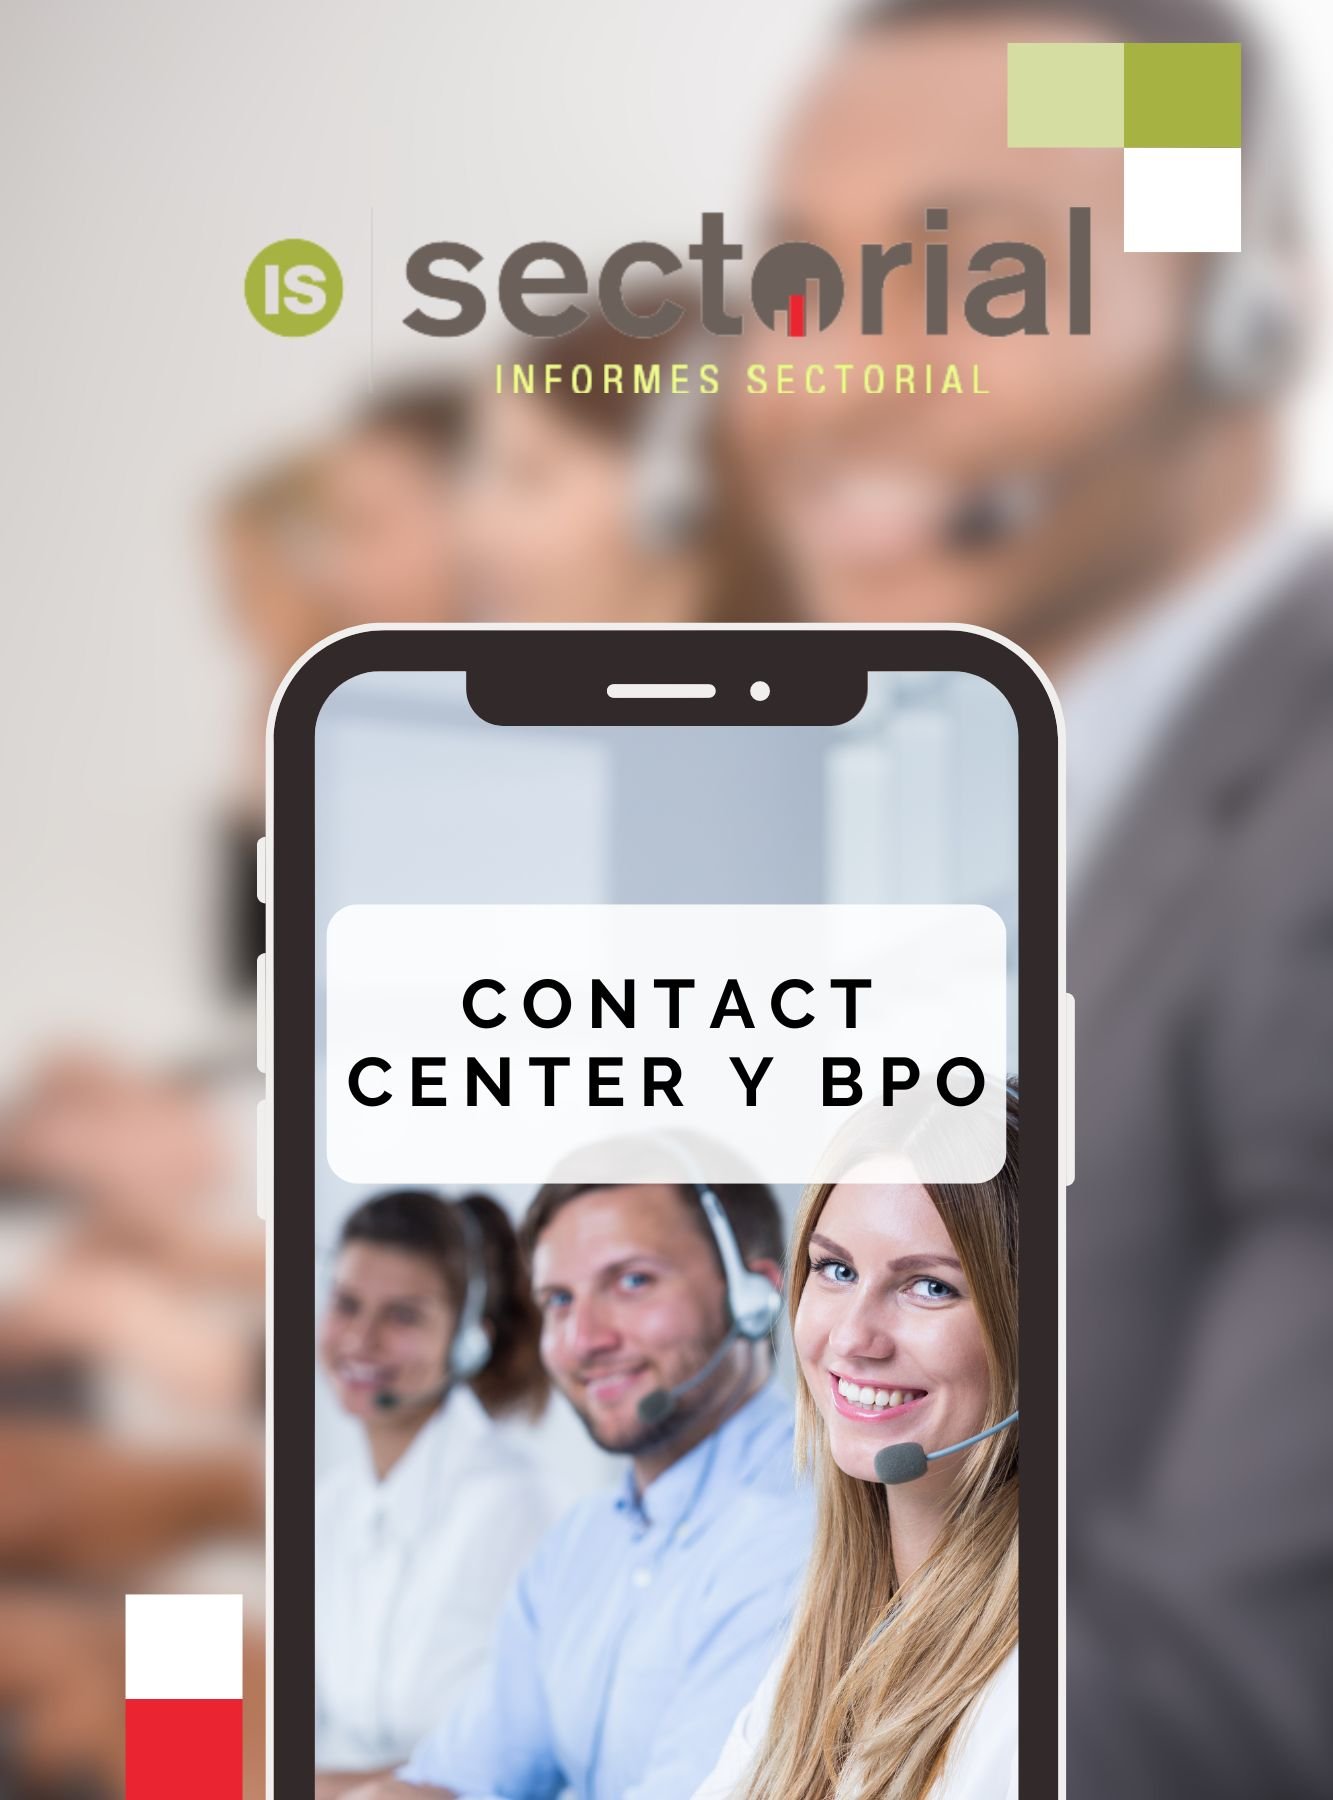 Contact Center y BPO